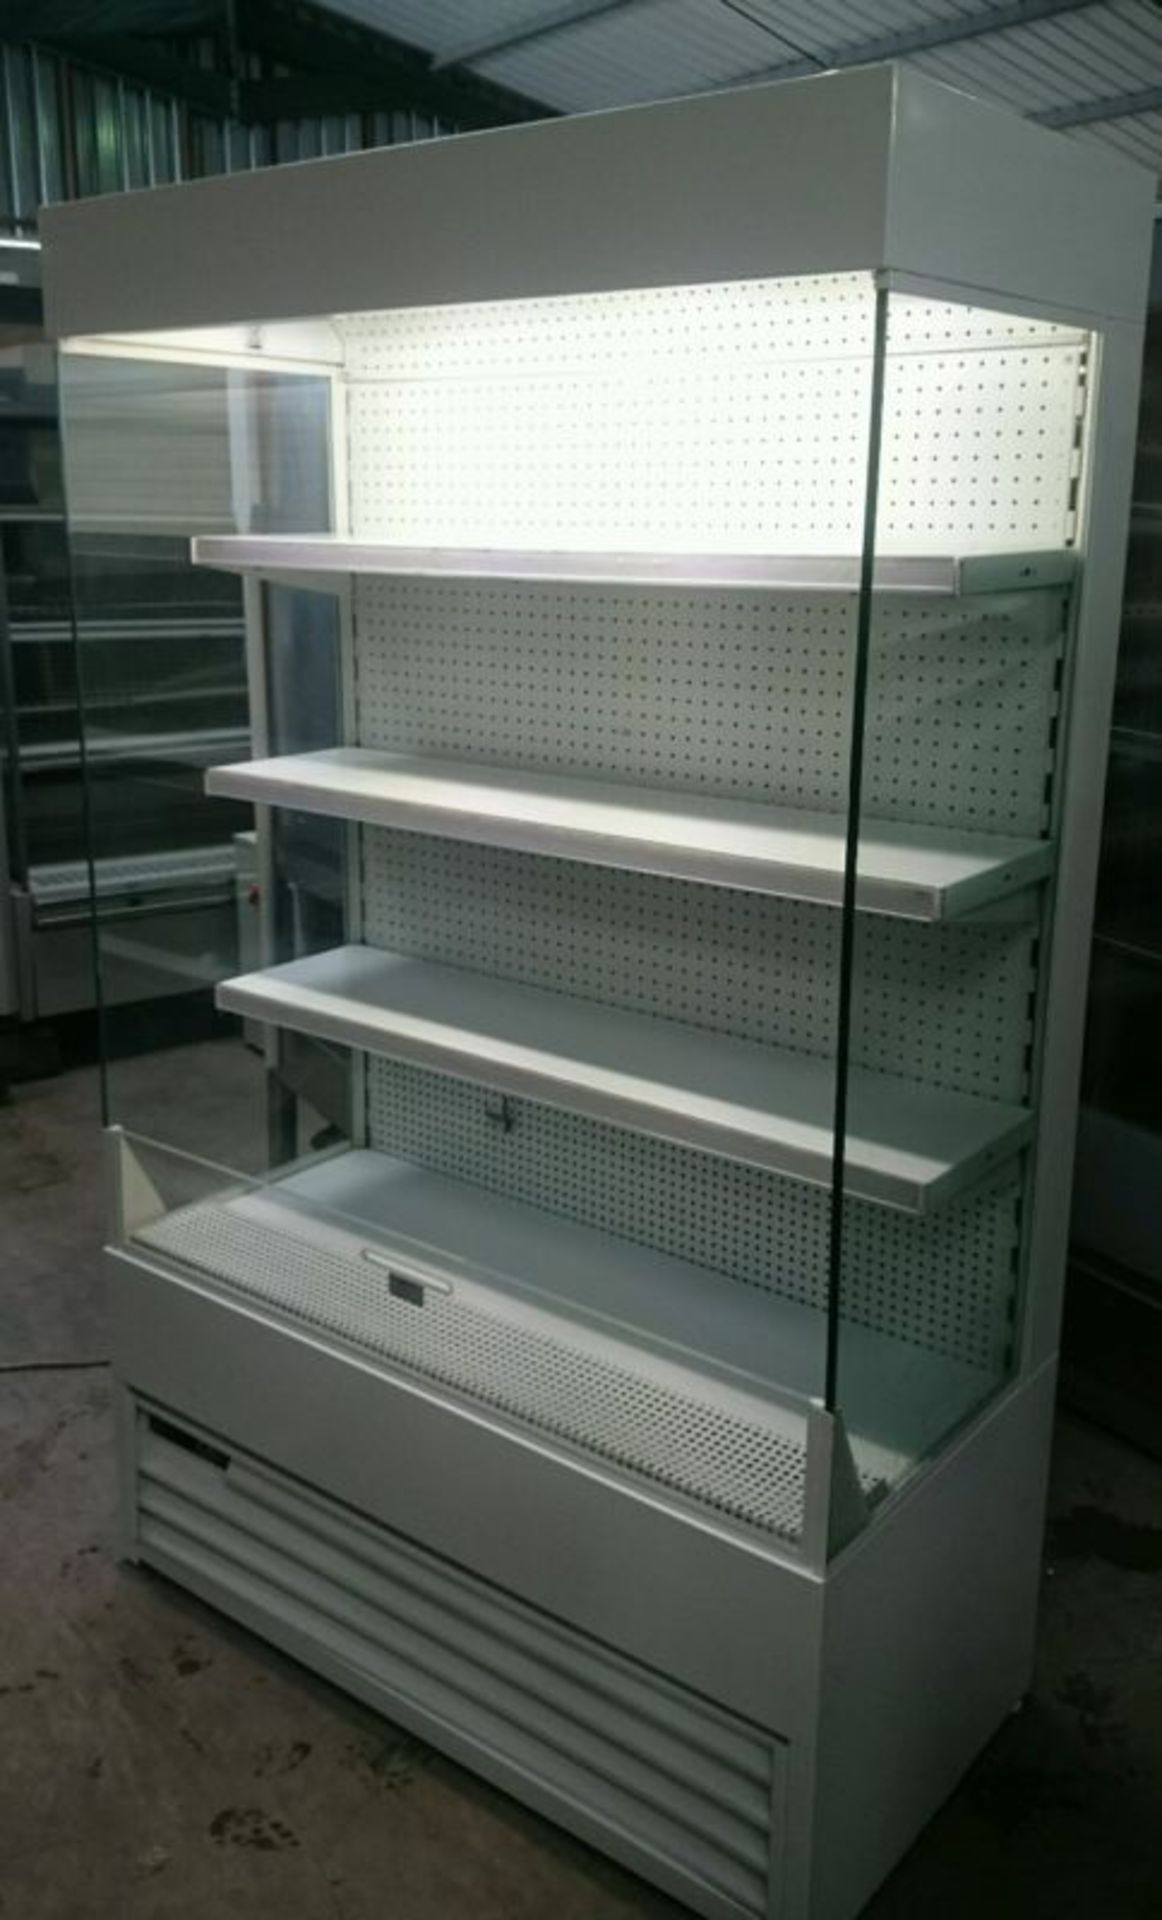 Shop Display Fridge with 4 Shelves 230v -  H195cm W121cm D60cm - Image 2 of 2